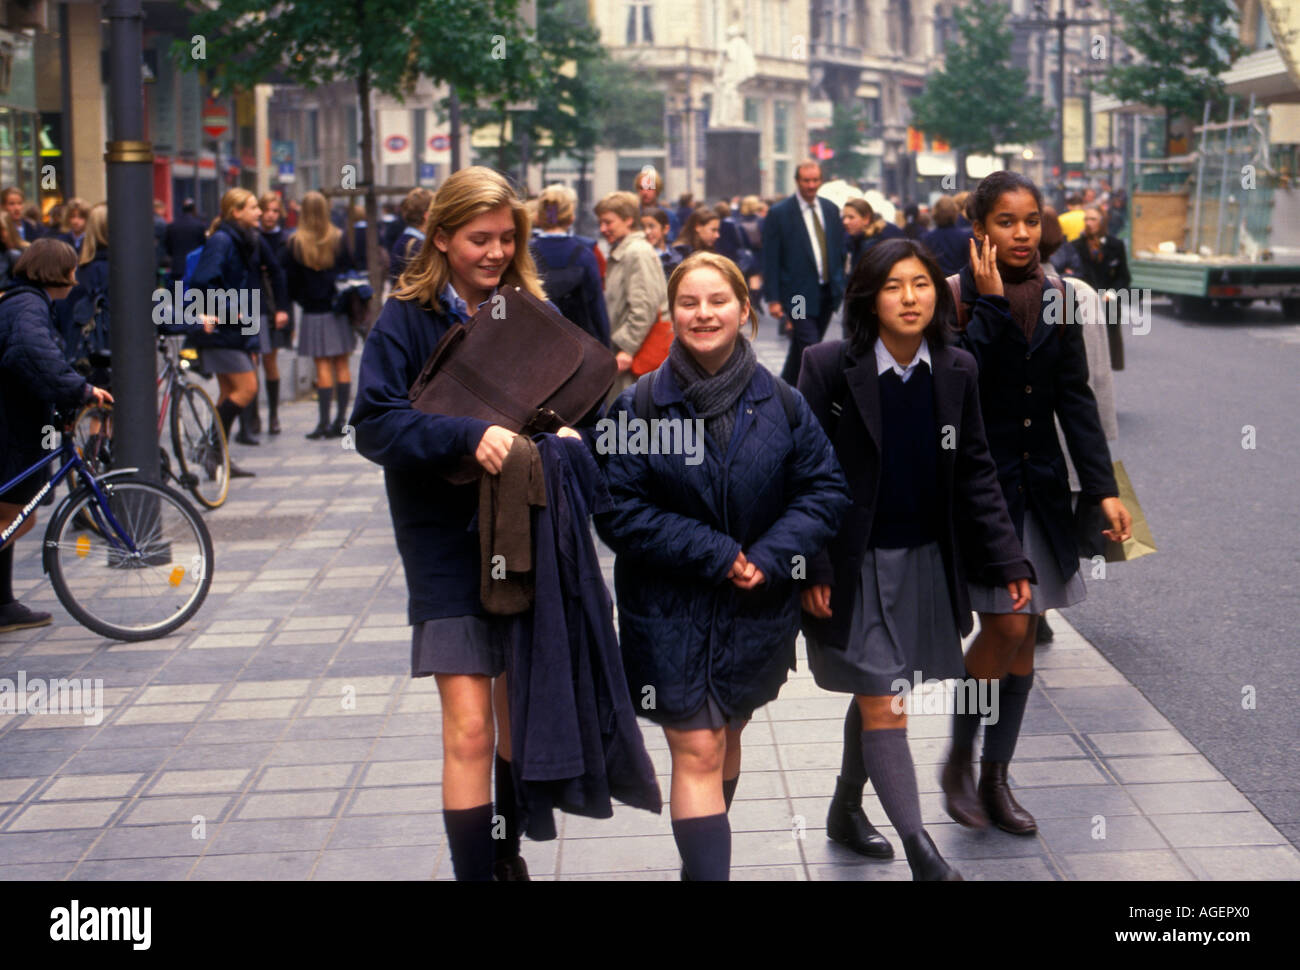 Belgian people female students wearing school uniform walking along The ...